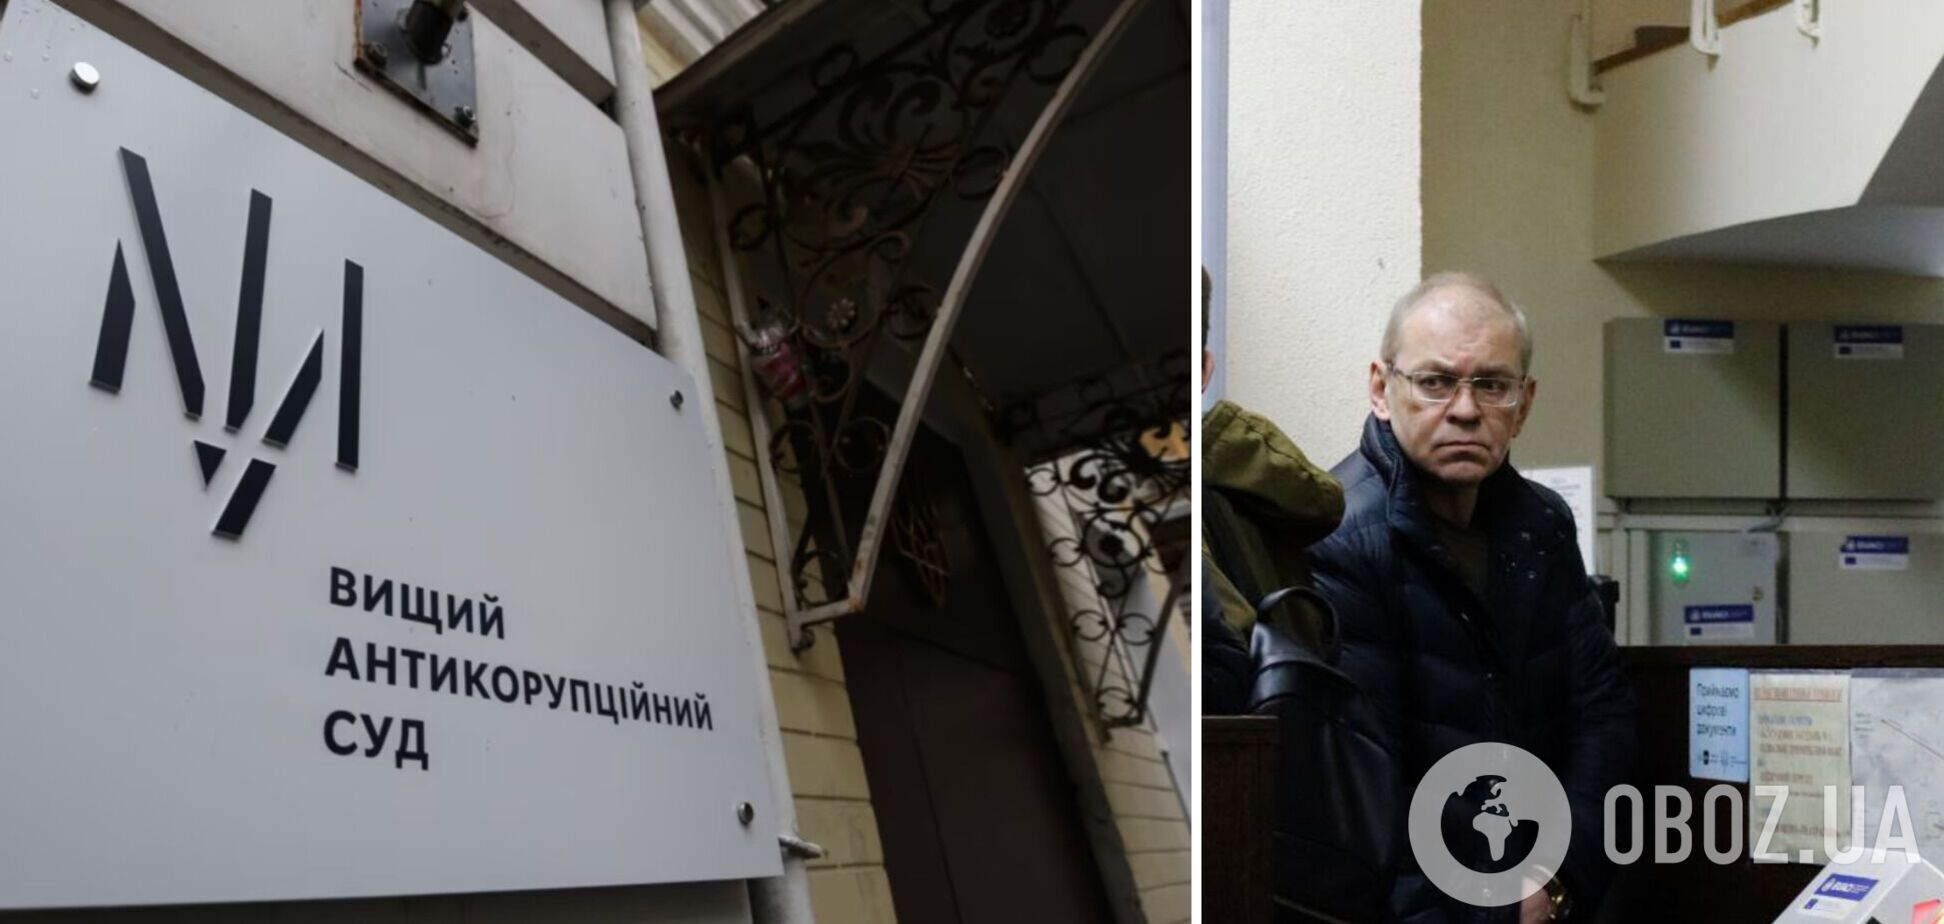 'Возвращаюсь к своим обязанностям': за экс-нардепа Сергея Пашинского внесли залог, он выступил с заявлением